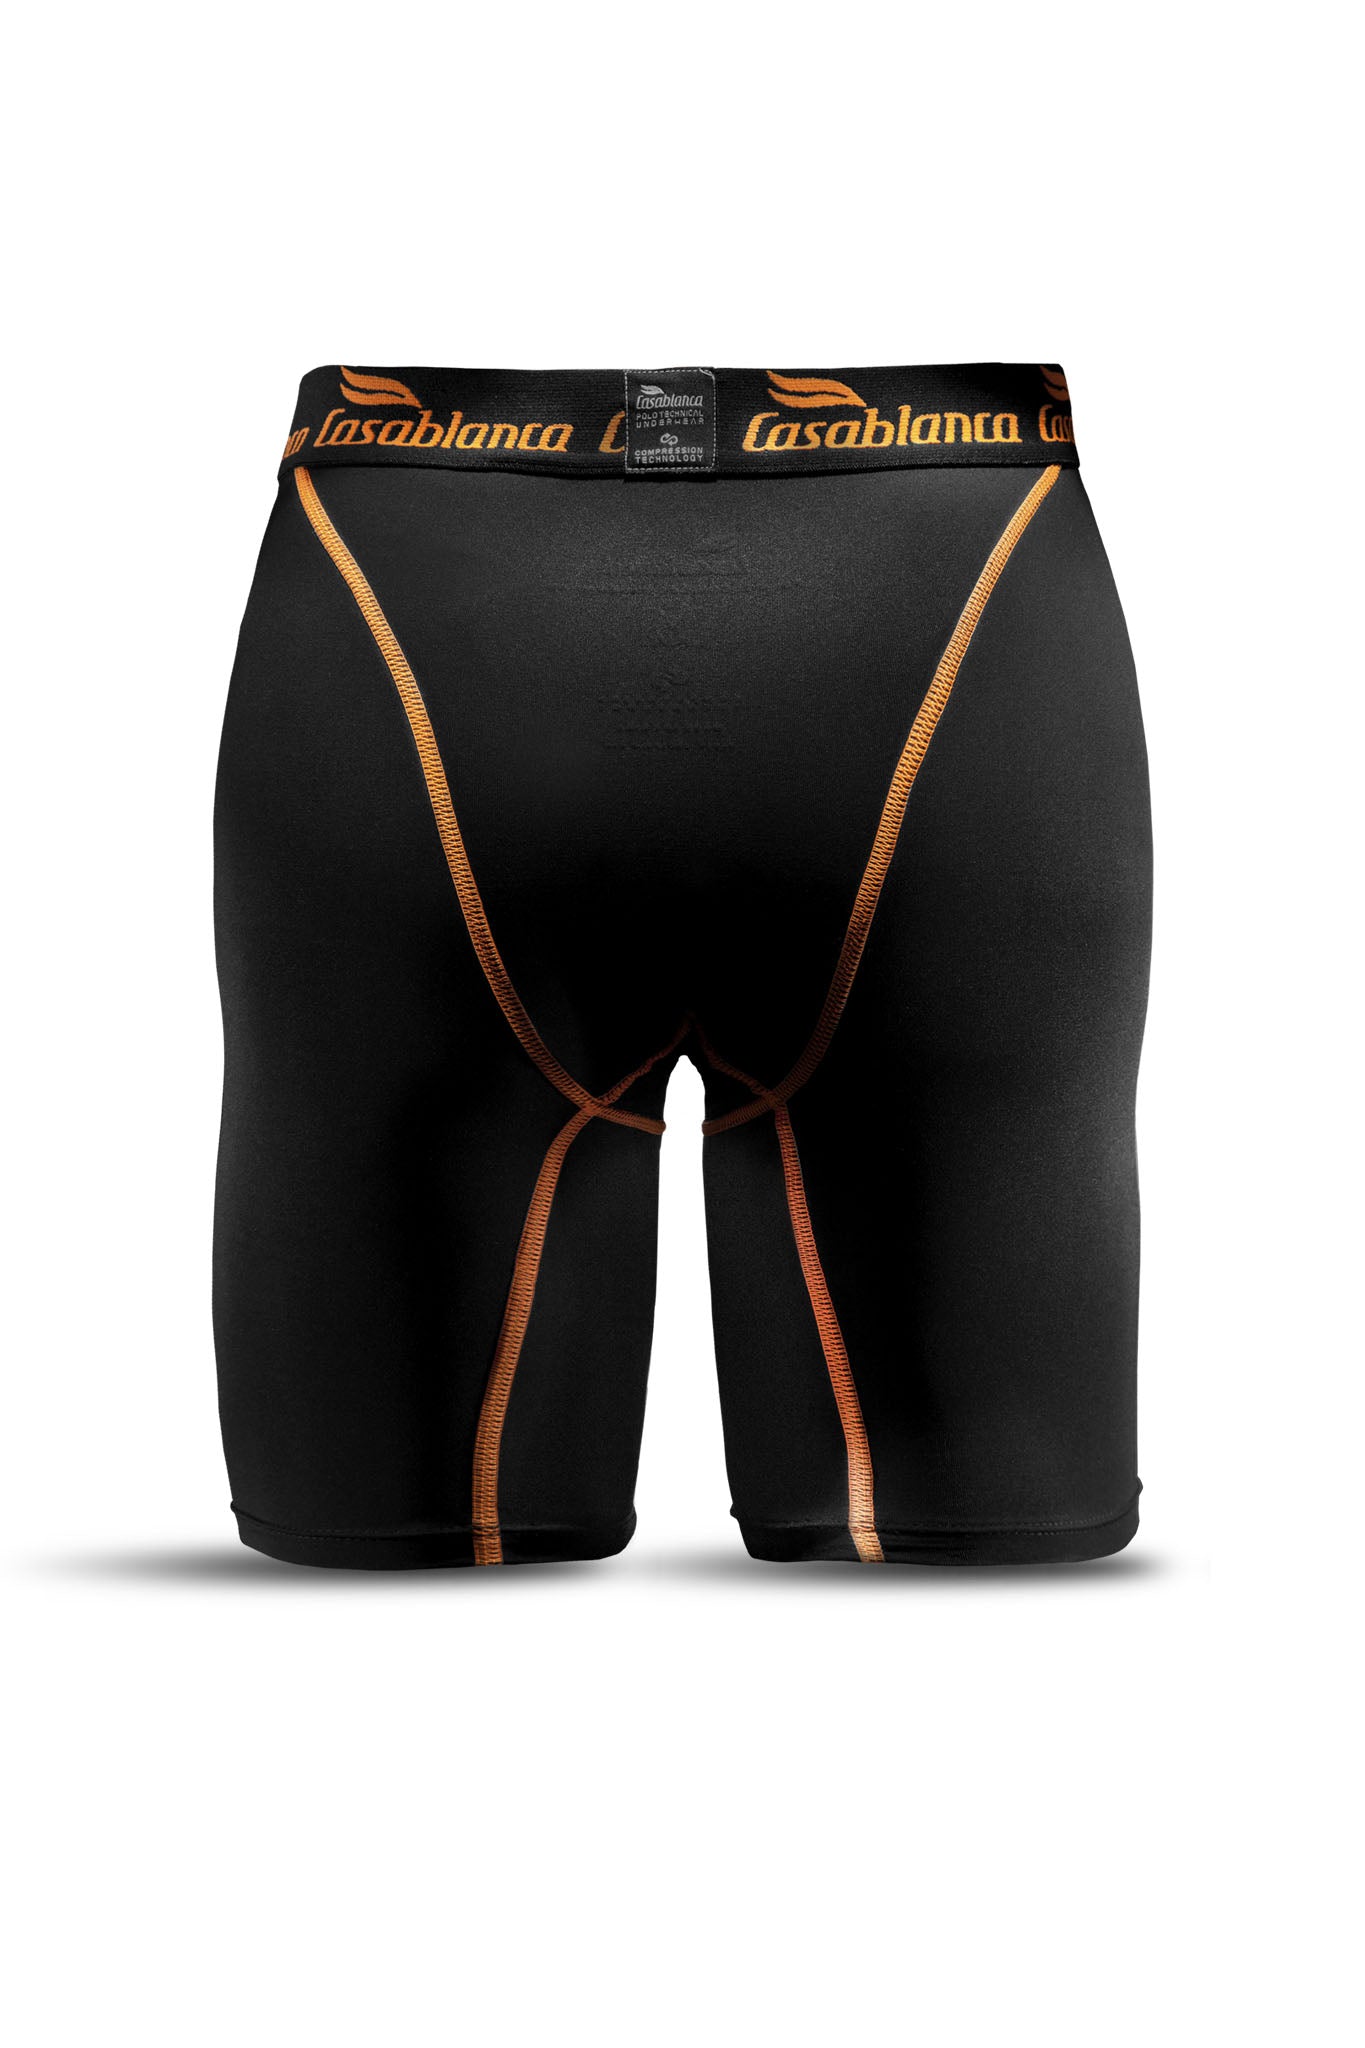 https://casablancapolo.com/cdn/shop/products/casablanca-technical-polo-underwear-02_2000x.jpg?v=1659118898